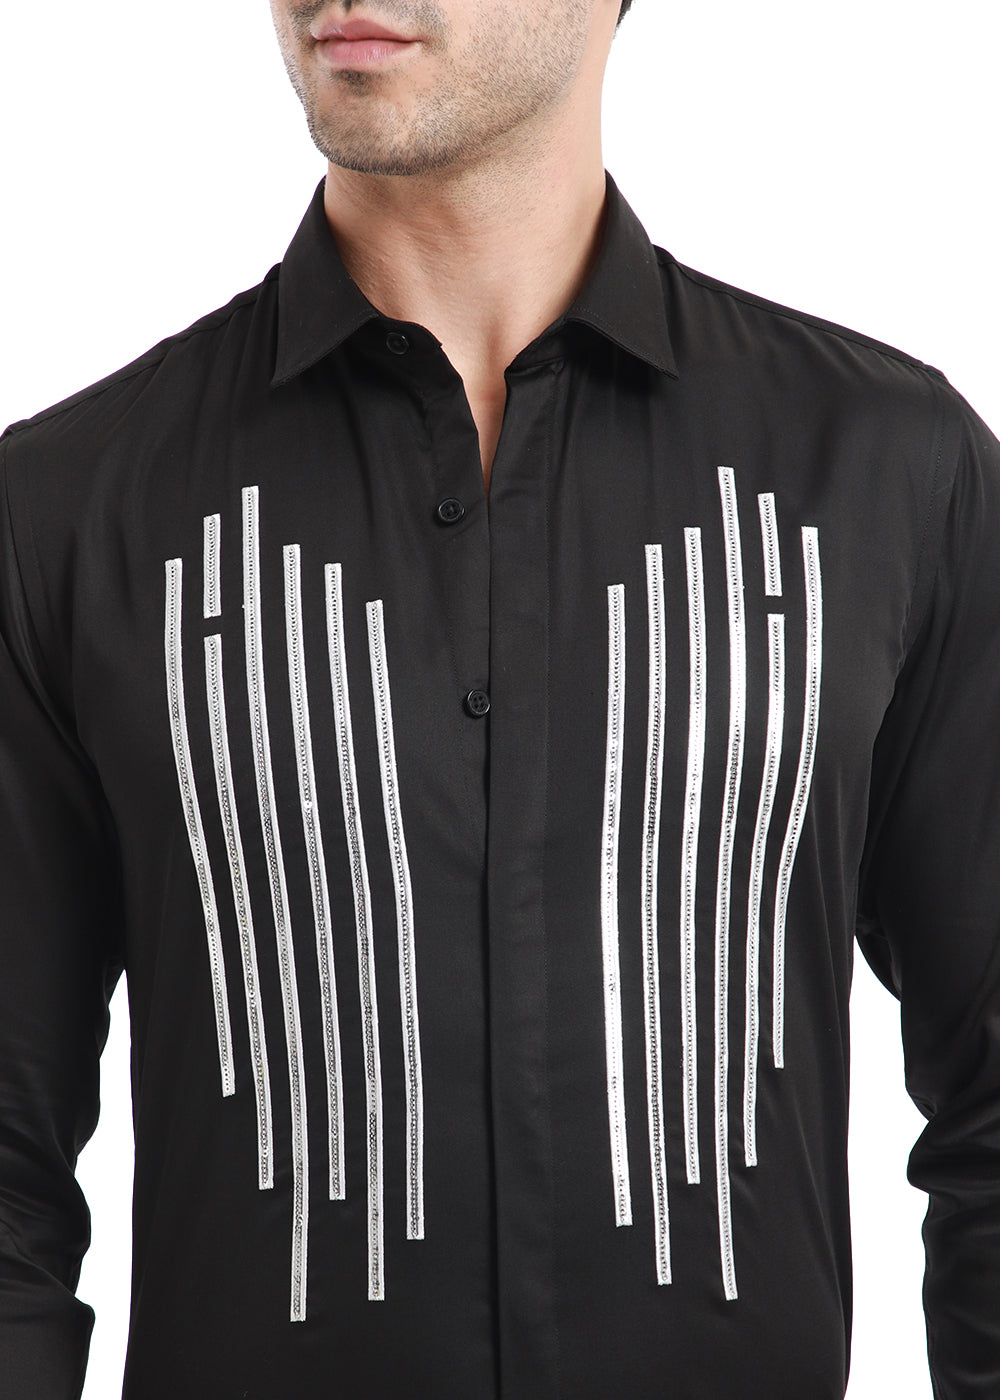 Symmetry Strip black shirt